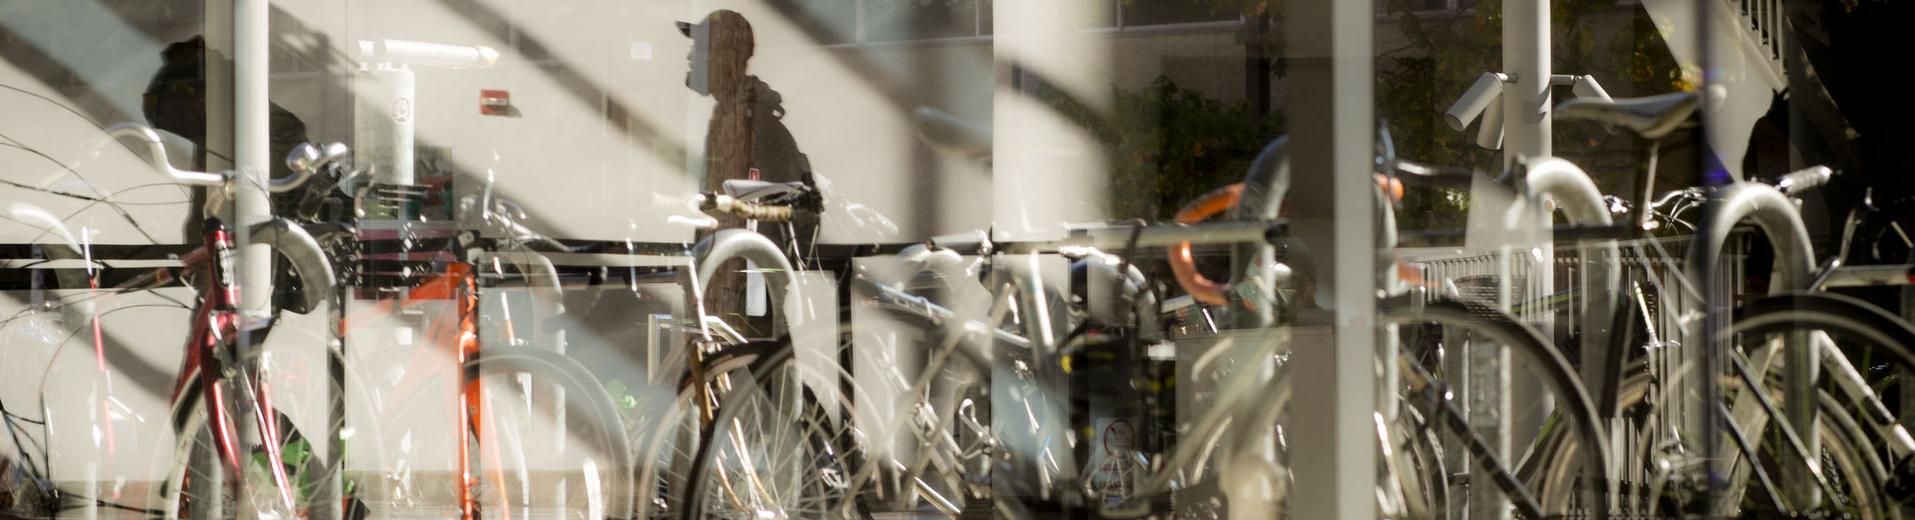 停放在主校区大楼外的自行车的抽象图像. 